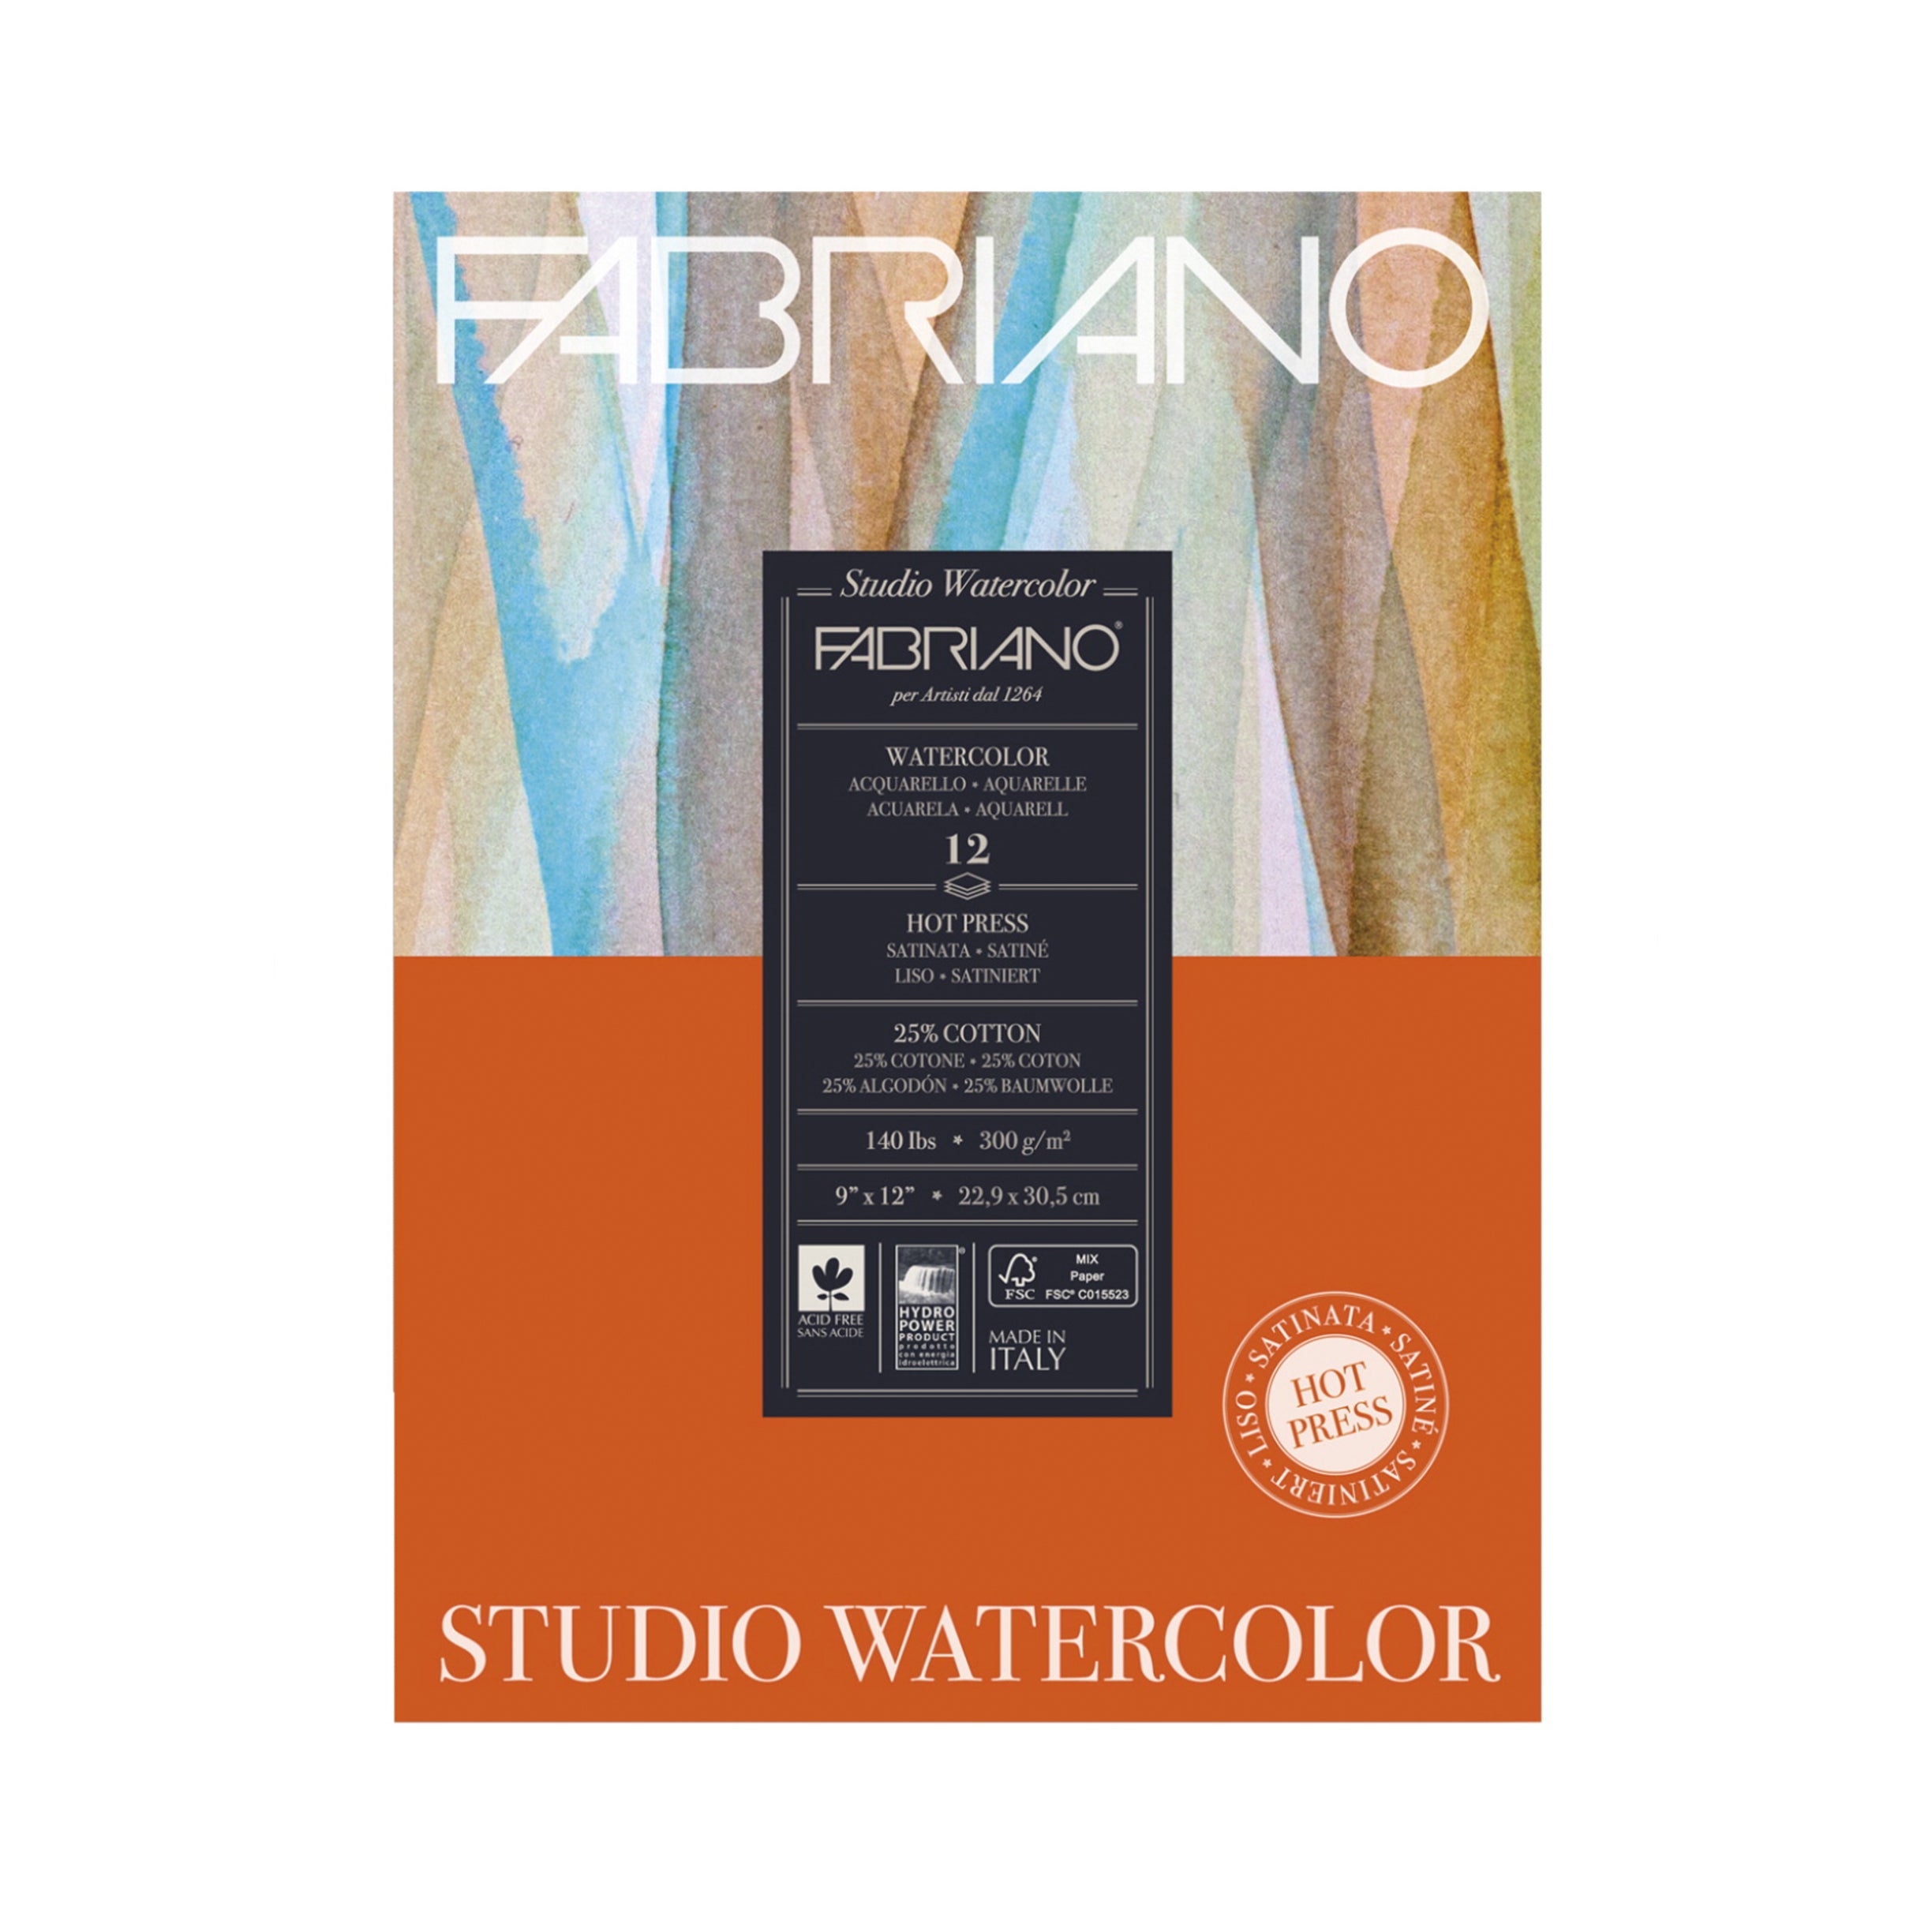 Fabriano Studio Watercolor Hot Press Paper Pad